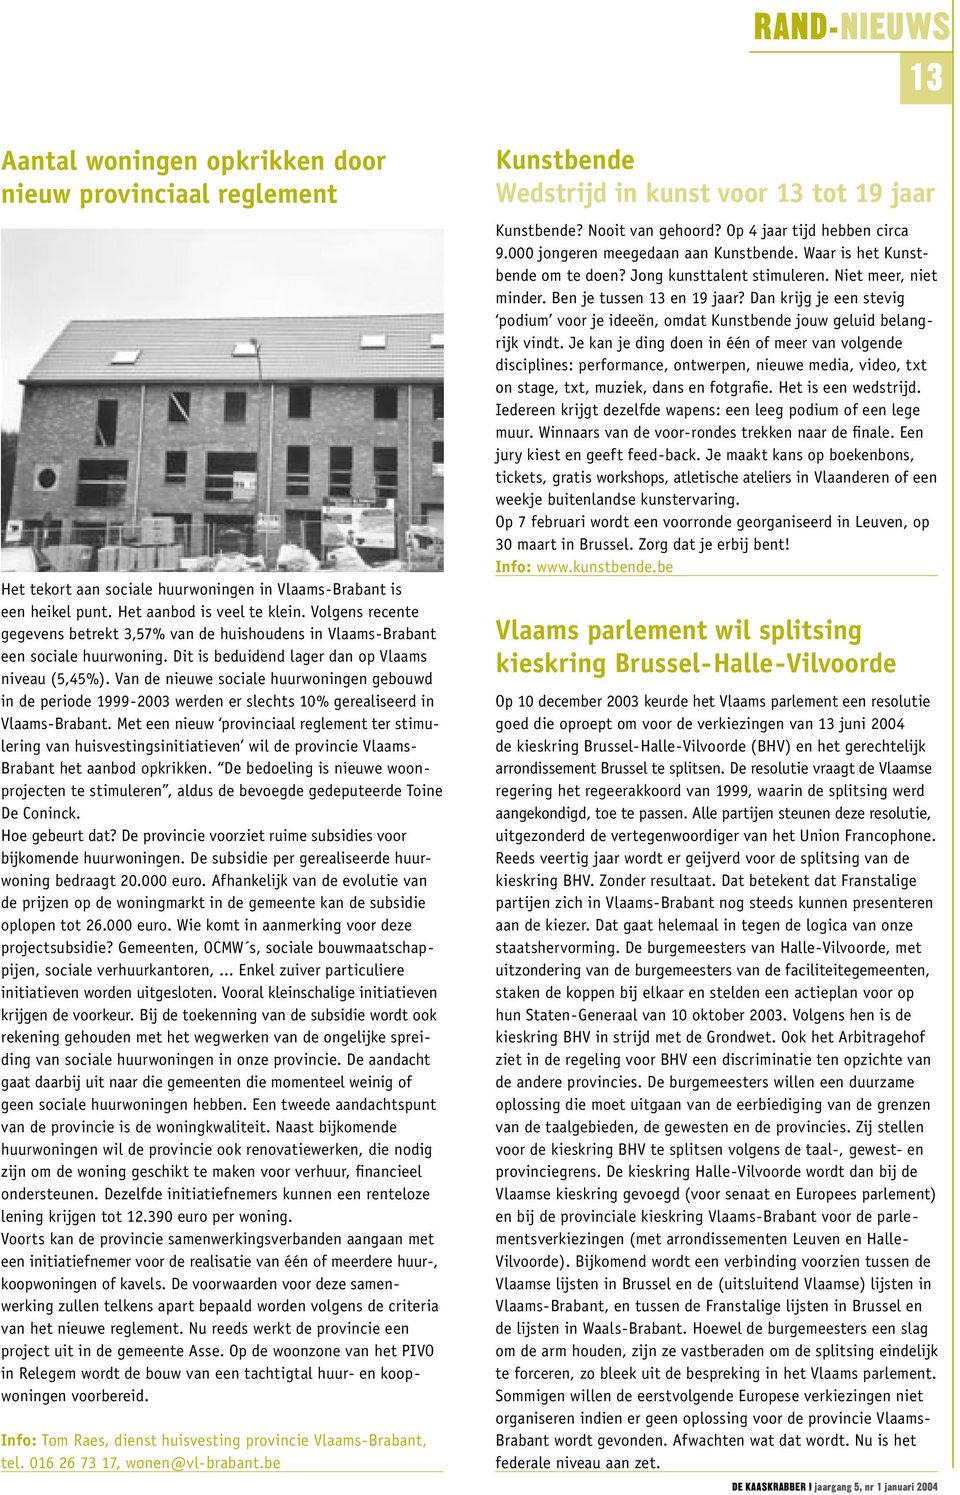 Van de nieuwe sociale huurwoningen gebouwd in de periode 1999-2003 werden er slechts 10% gerealiseerd in Vlaams-Brabant.